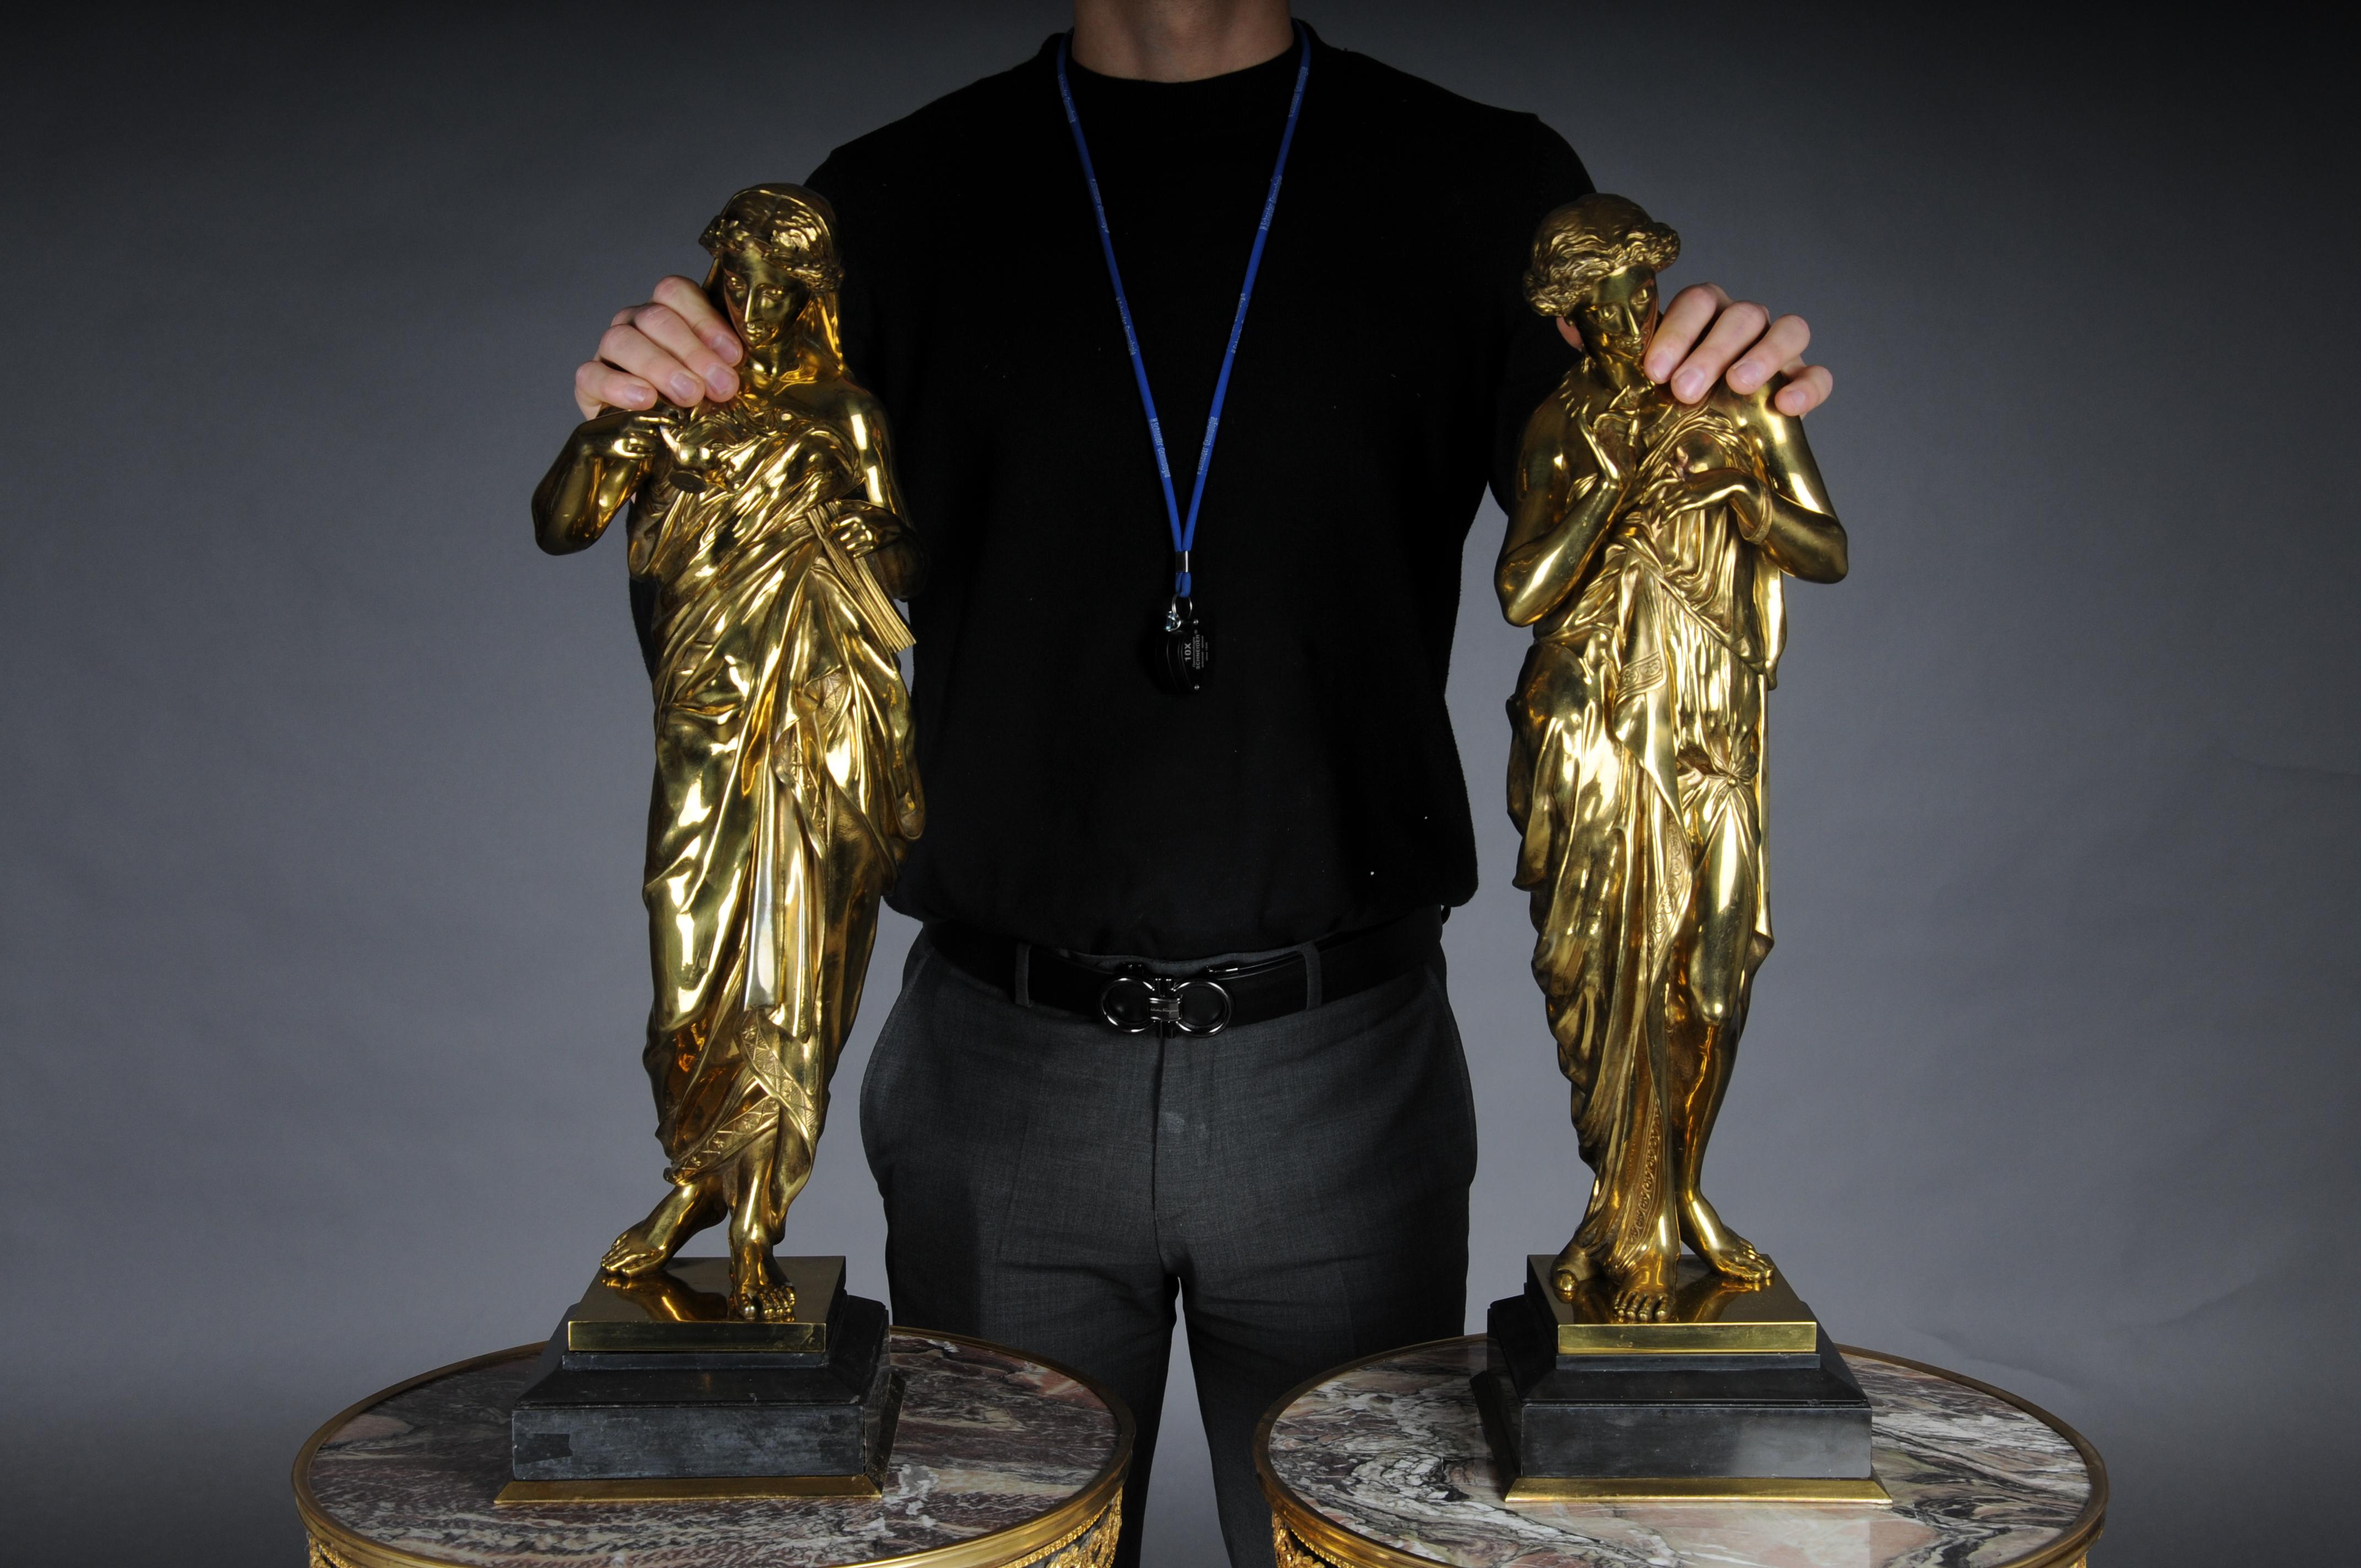 

Paire de (2) sculptures monumentales en bronze Empire, Paris.

Sculptures en bronze doré reposant sur des bases rectangulaires à plusieurs niveaux.
Très élégant et décoratif, il attire à coup sûr le regard dans n'importe quel